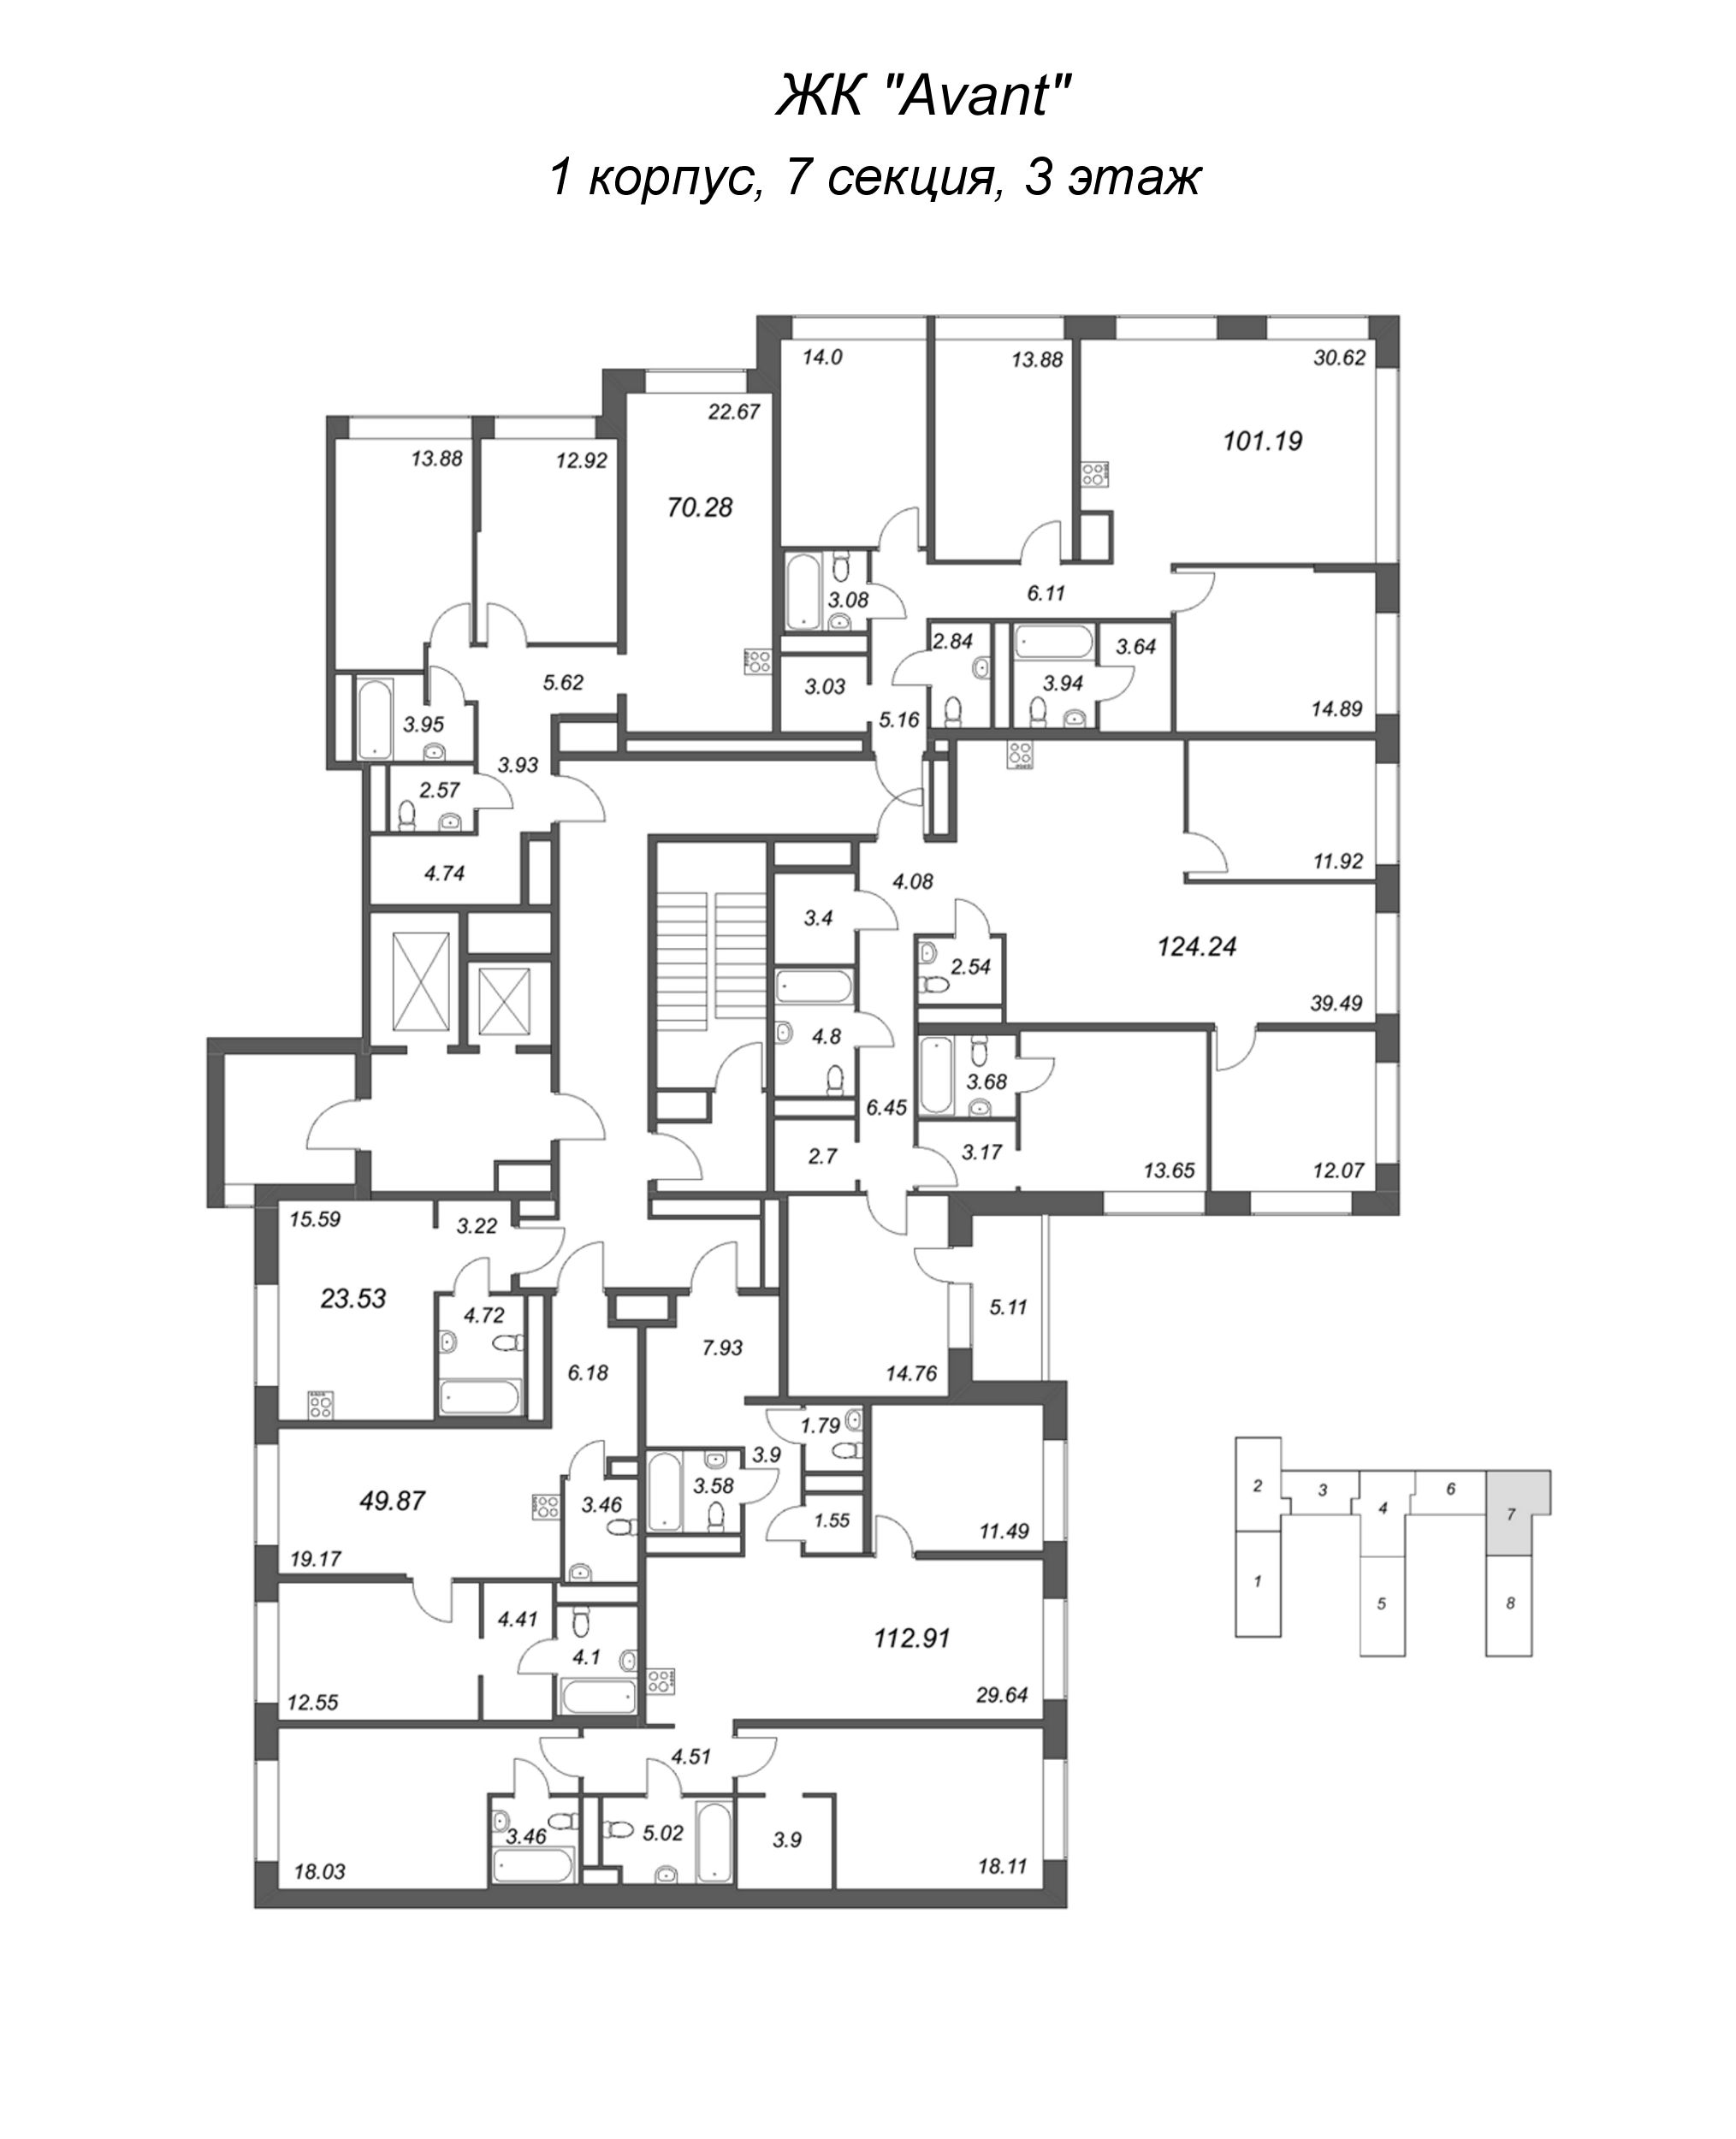 Квартира-студия, 23.53 м² в ЖК "Avant" - планировка этажа